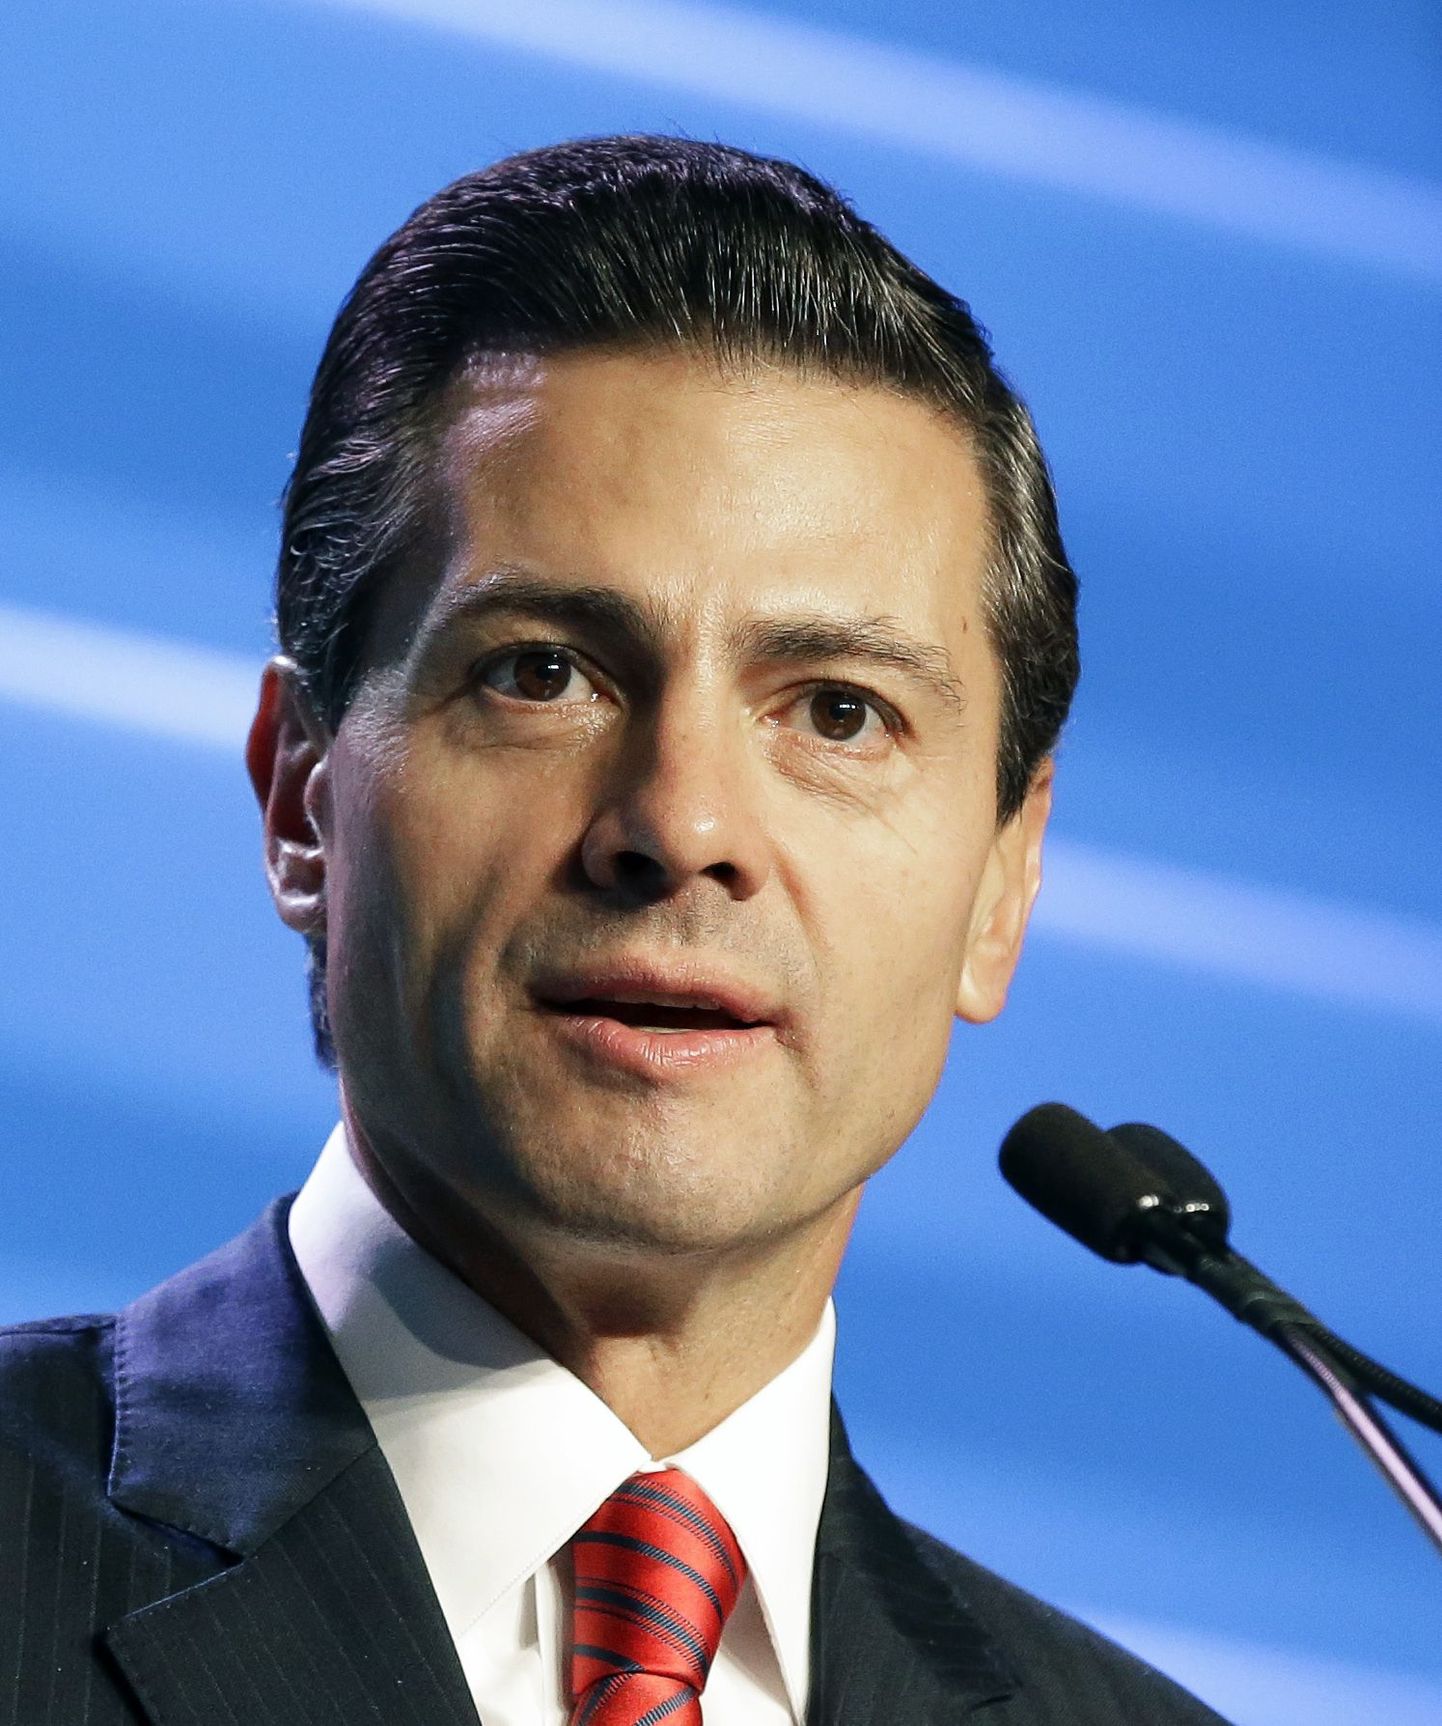 Mehhiko president Enrique Peña Nieto.